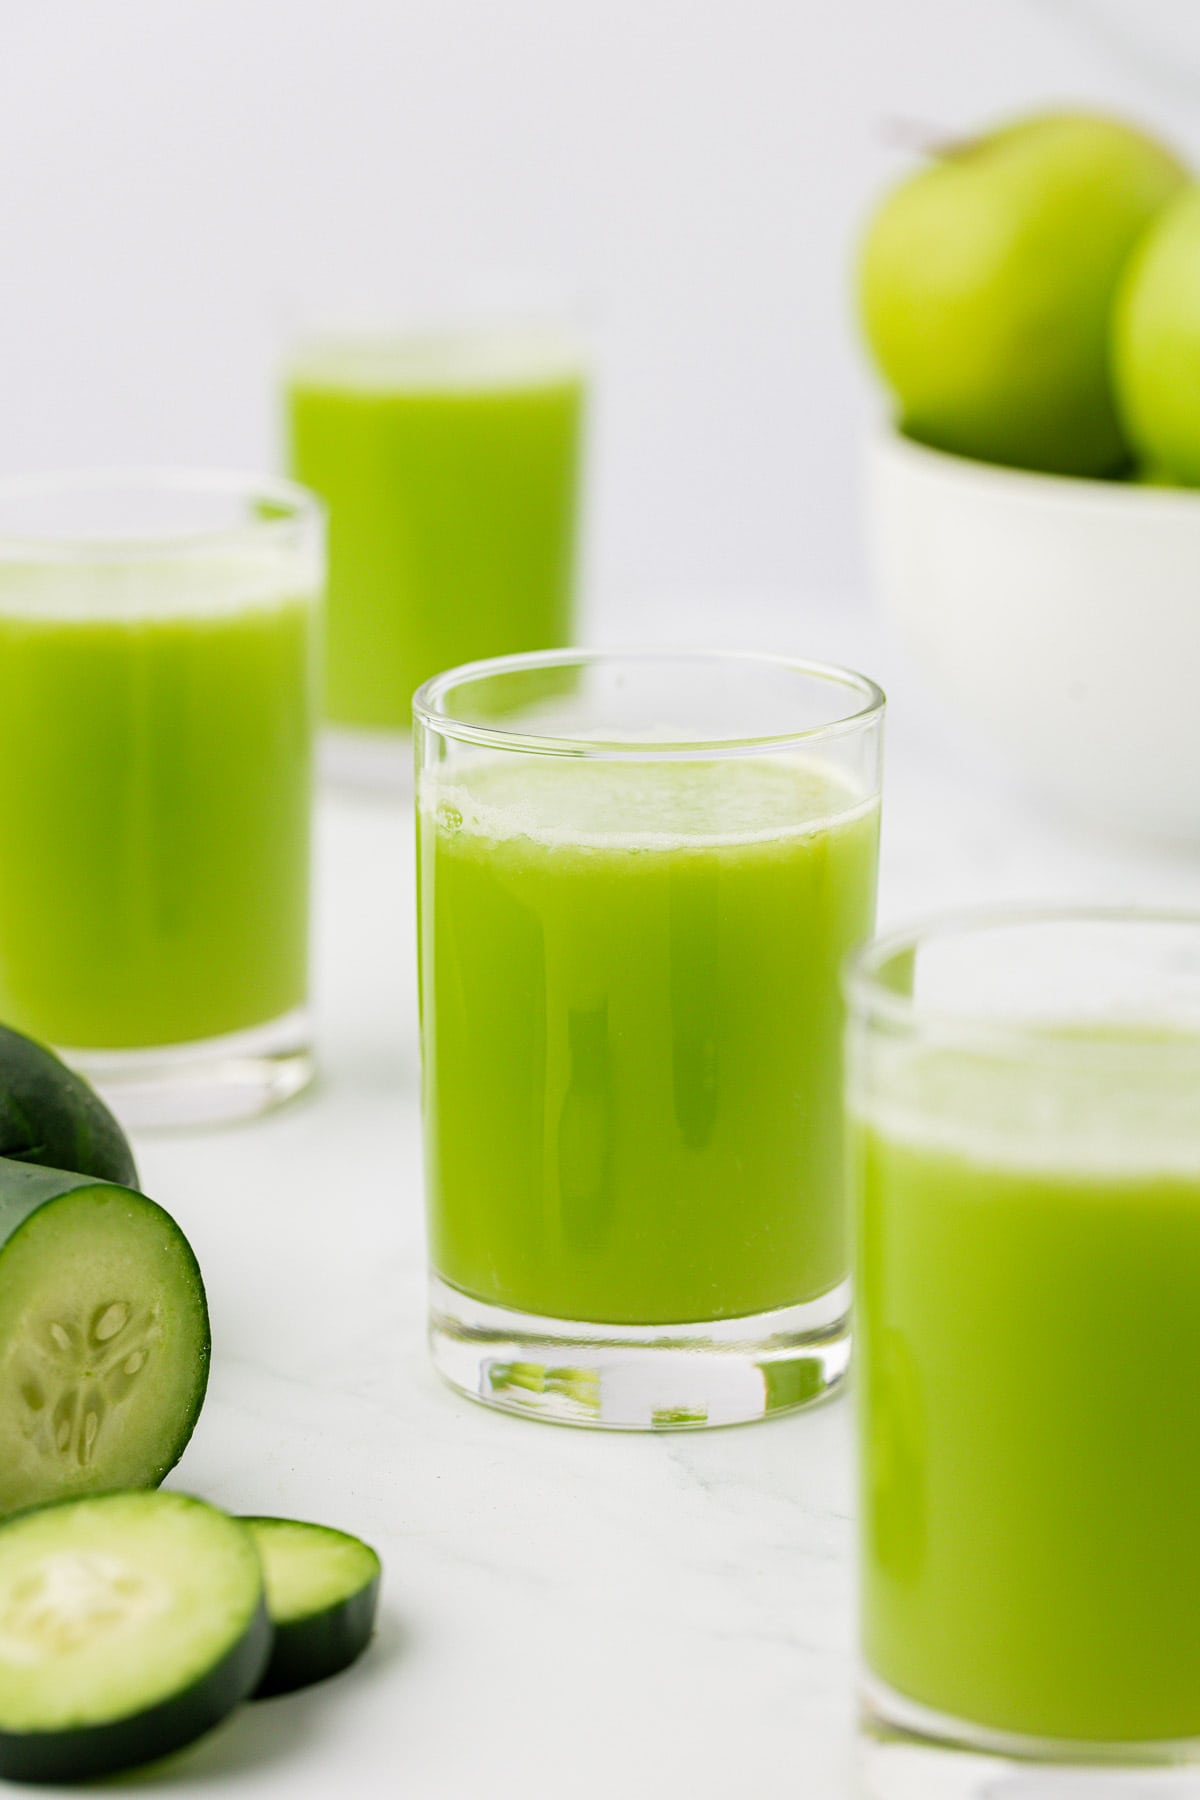 cucumber juice in a glass